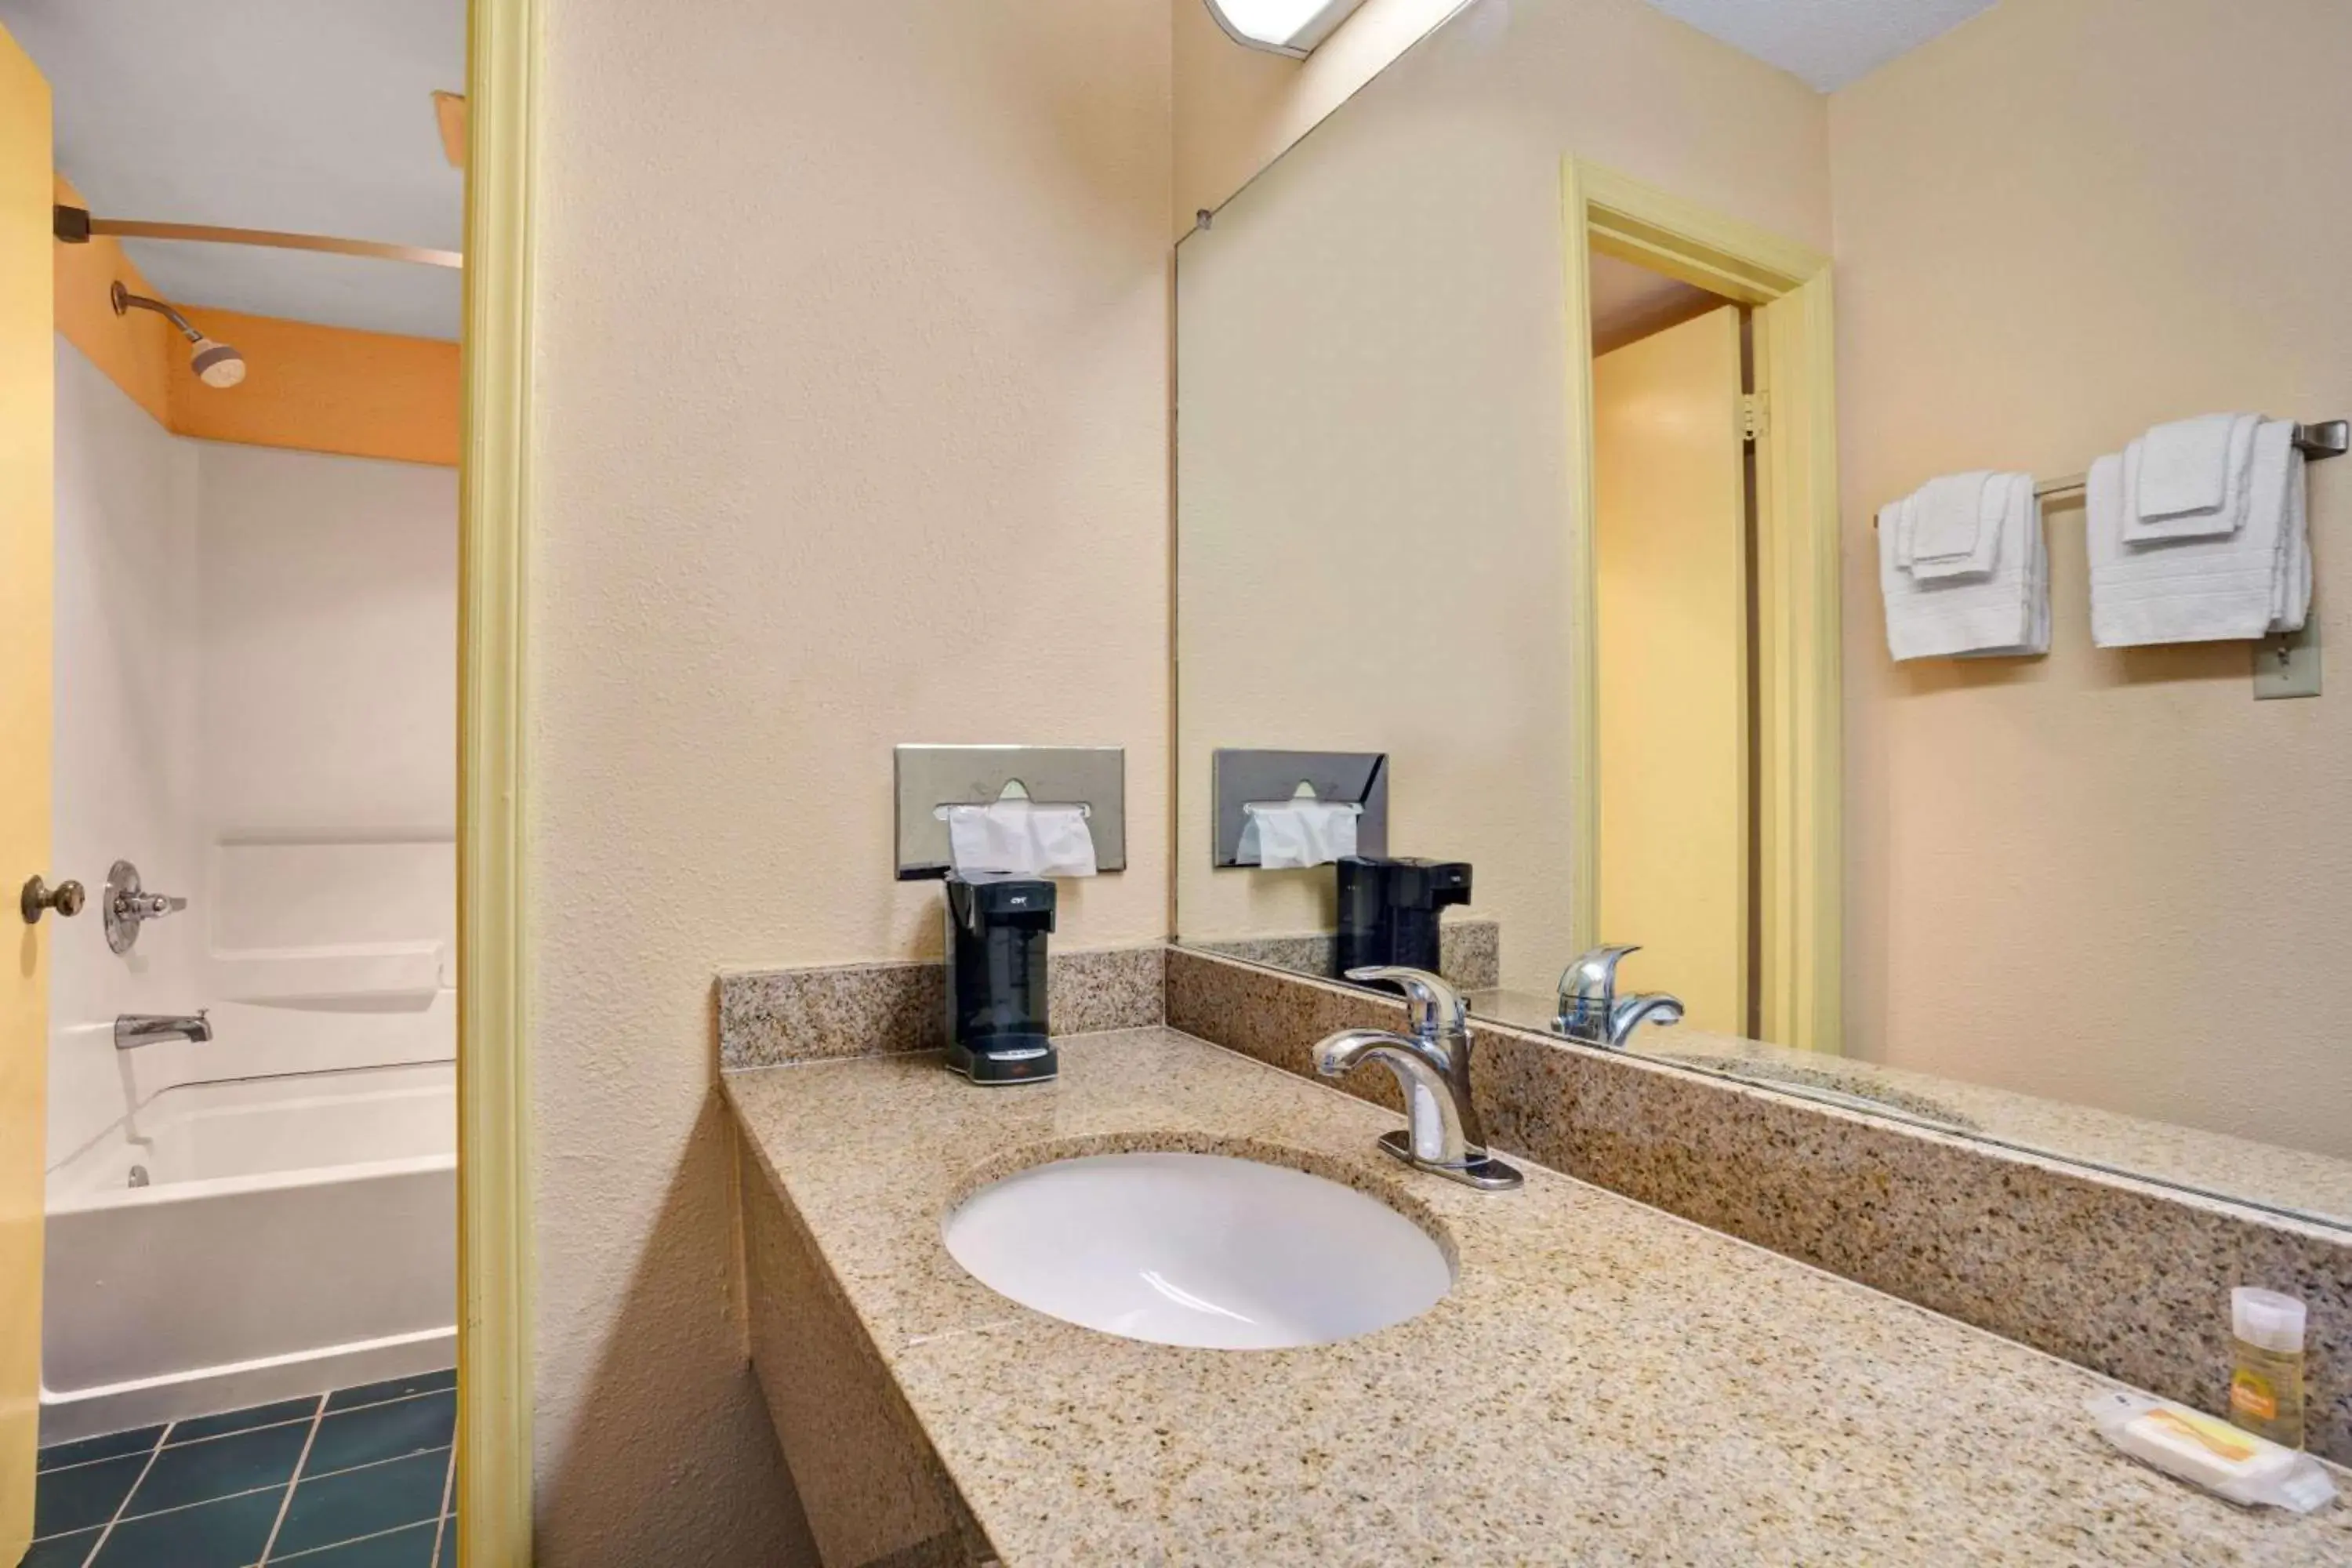 Photo of the whole room, Bathroom in Days Inn by Wyndham Elizabeth City